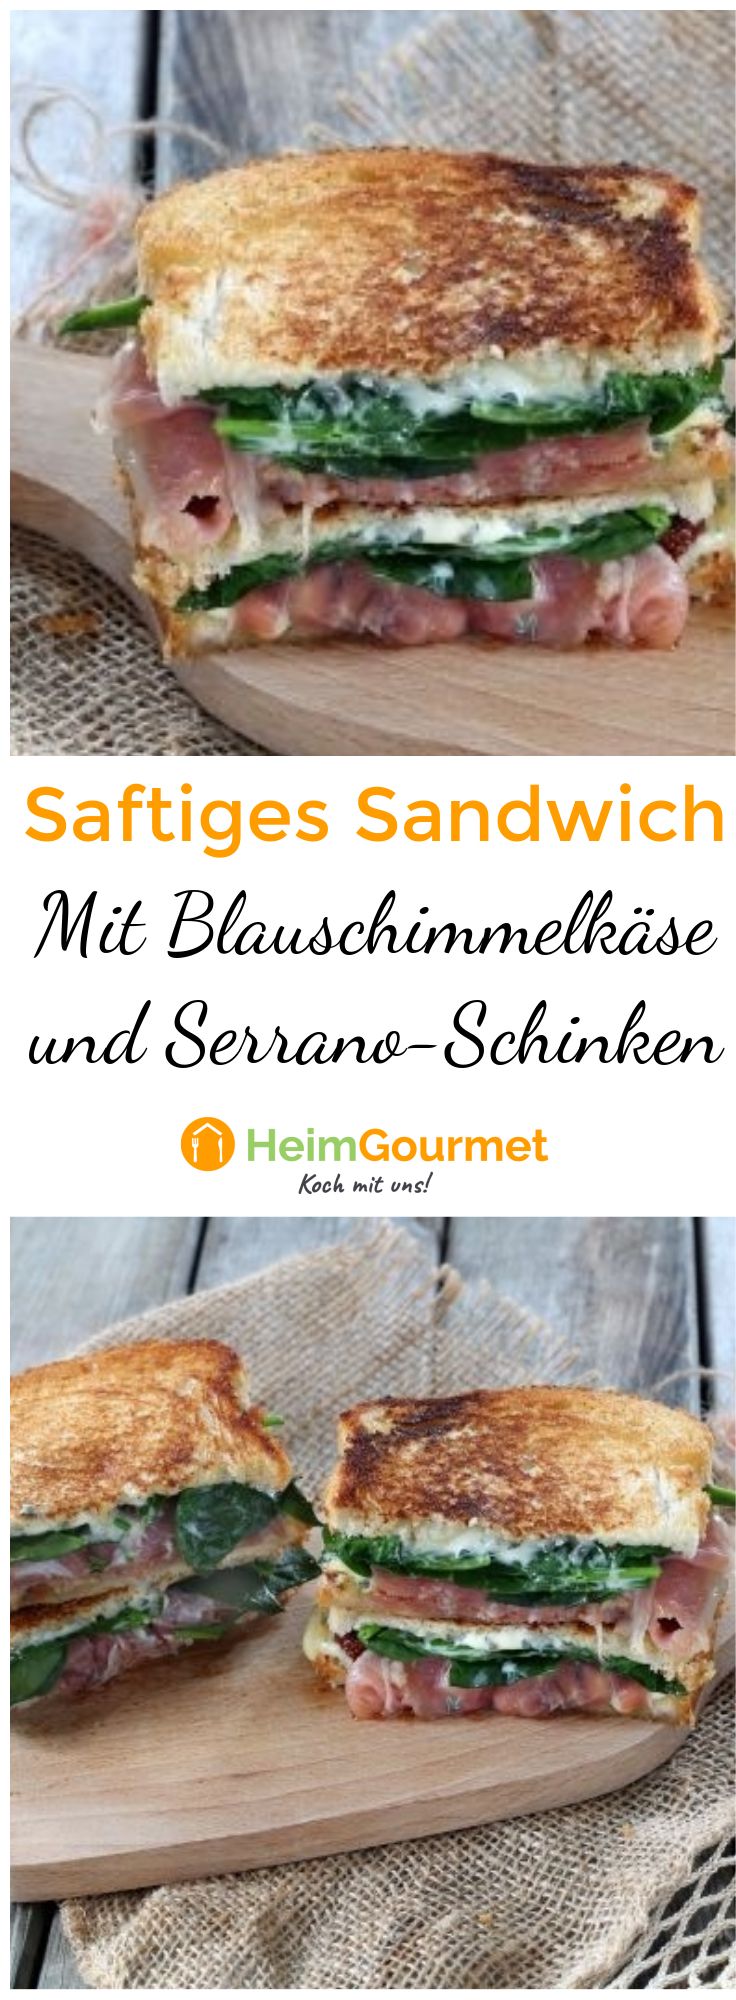 Rezept für saftiges Sandwich mit Serrano-Schinken und Blauschimmelkäse